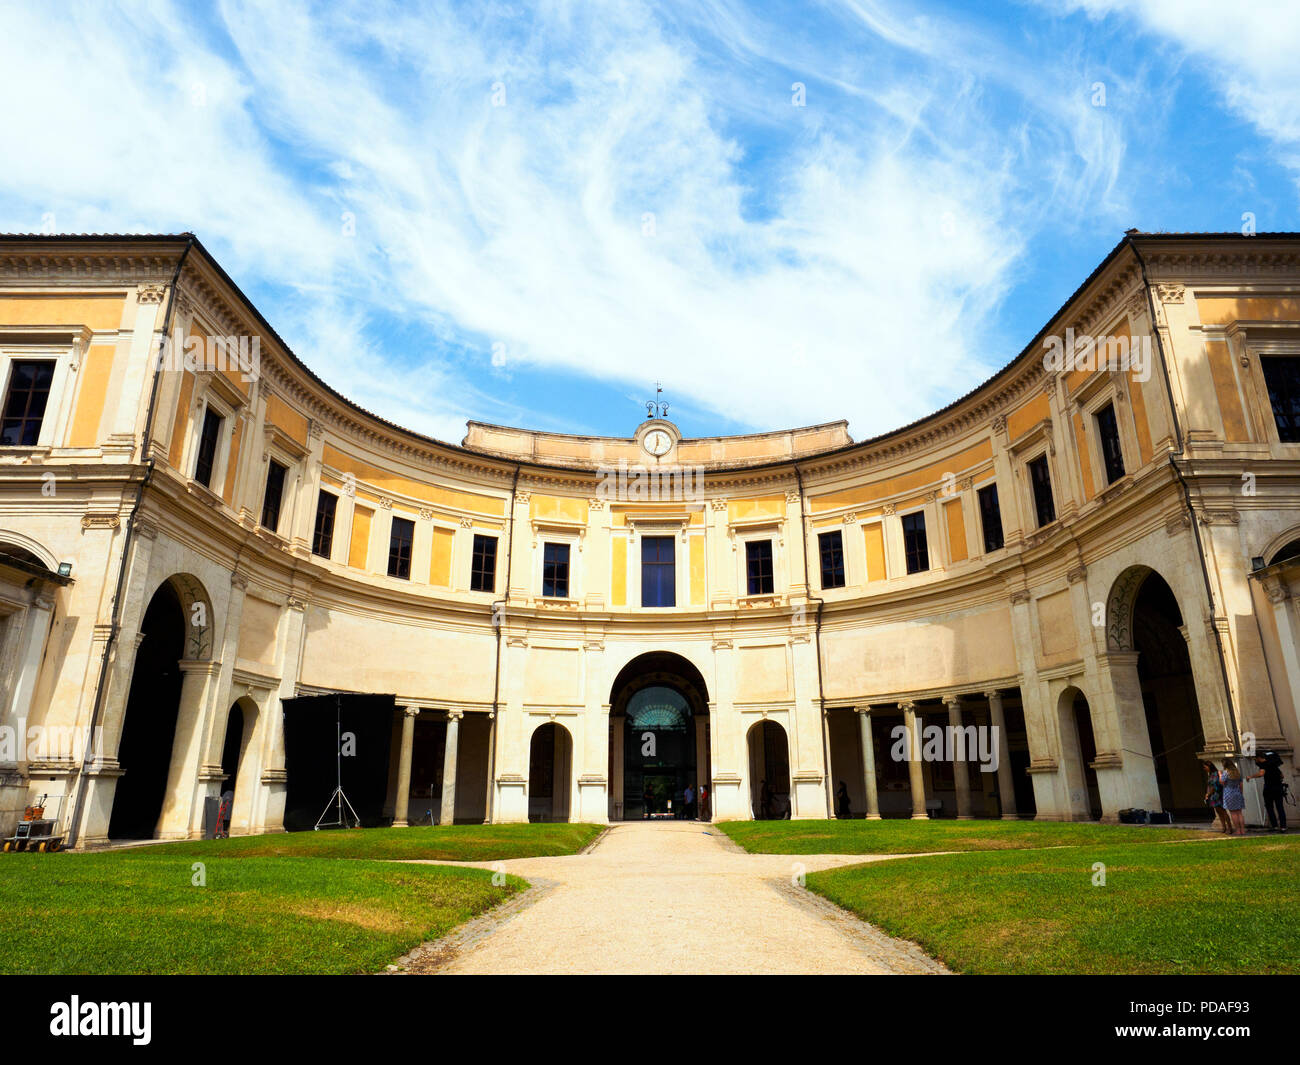 Rear facade with semi-circular portico loggia overlooking the interior courtyard - National Etruscan Museum of Villa Giulia - Rome, Italy Stock Photo